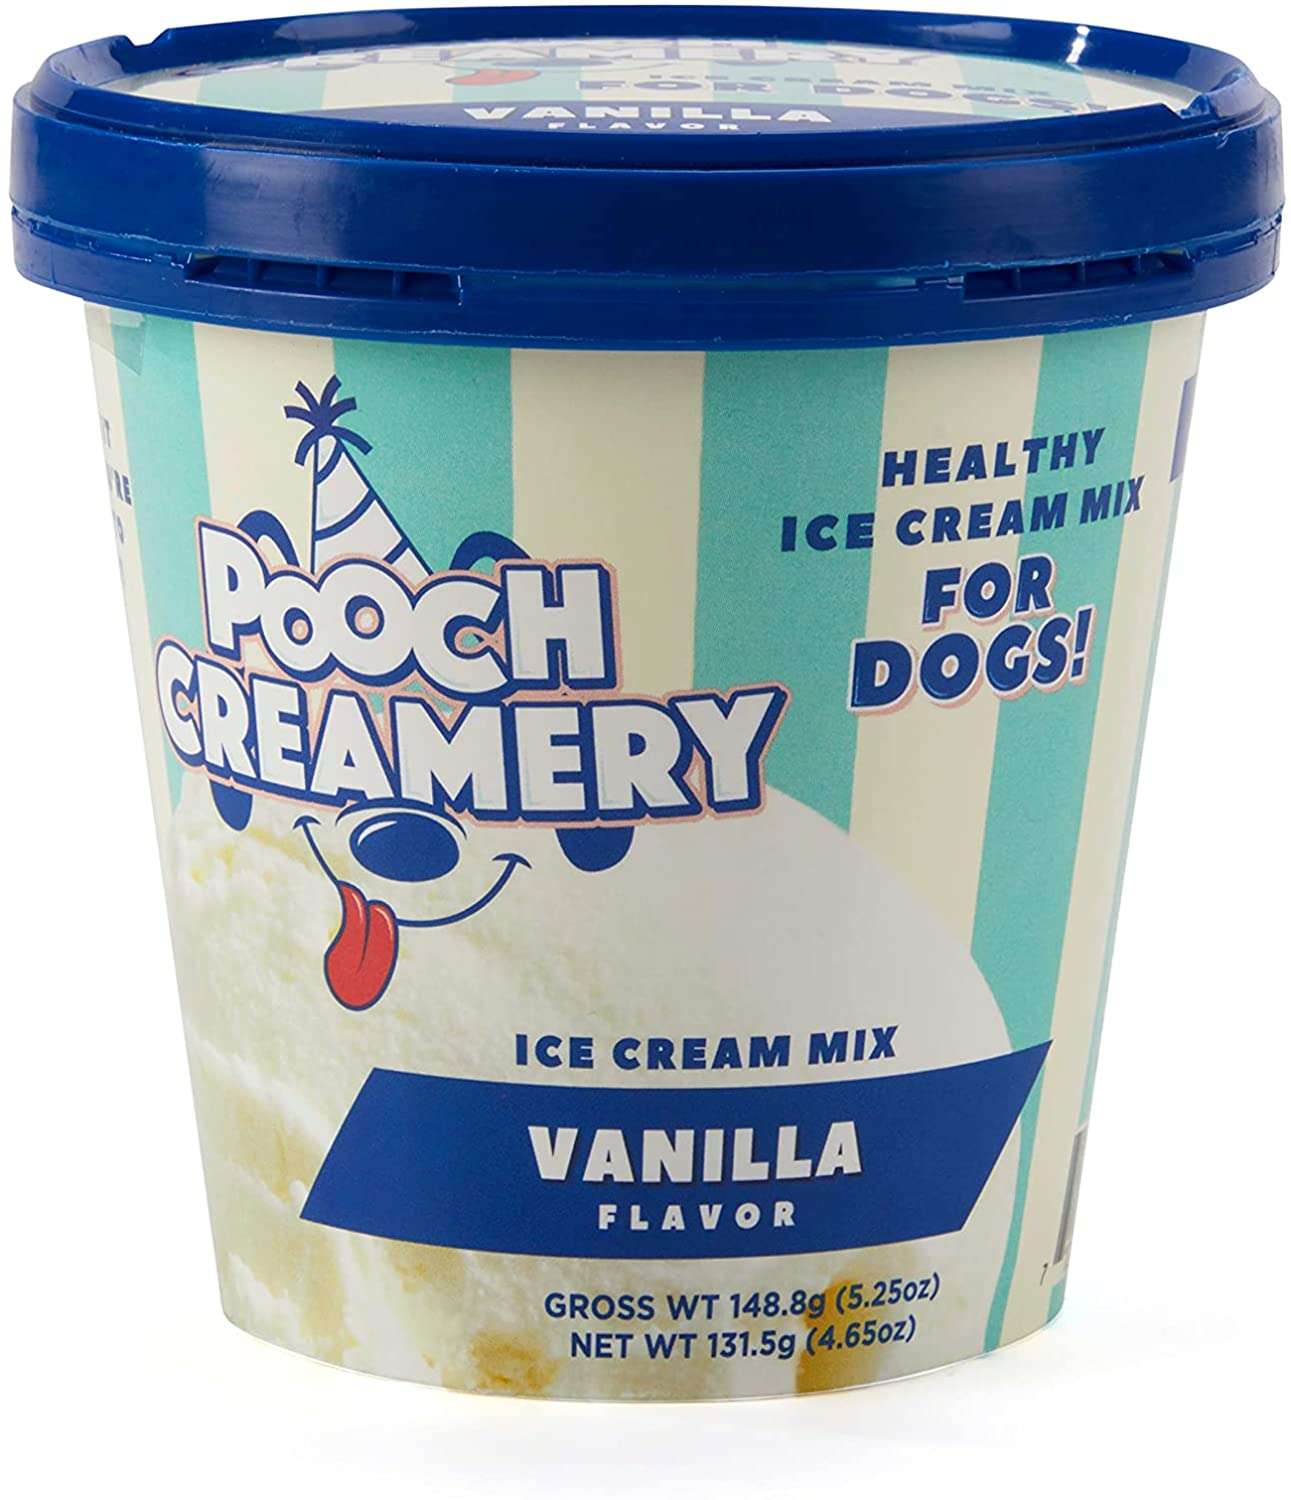 ppch creamery ice cream